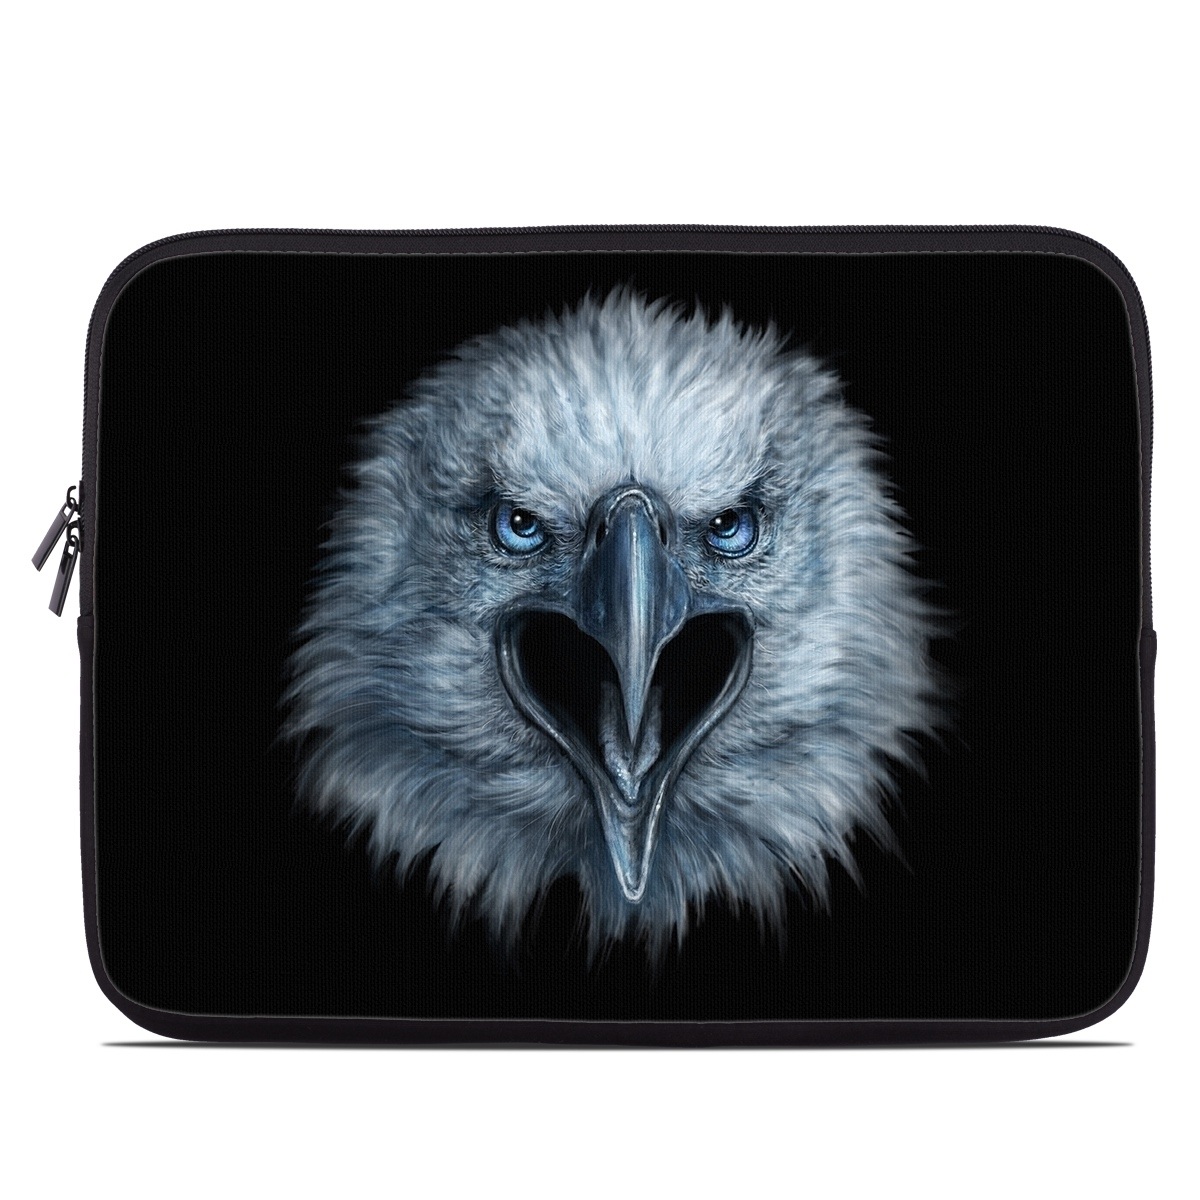 Laptop Sleeve - Eagle Face (Image 1)